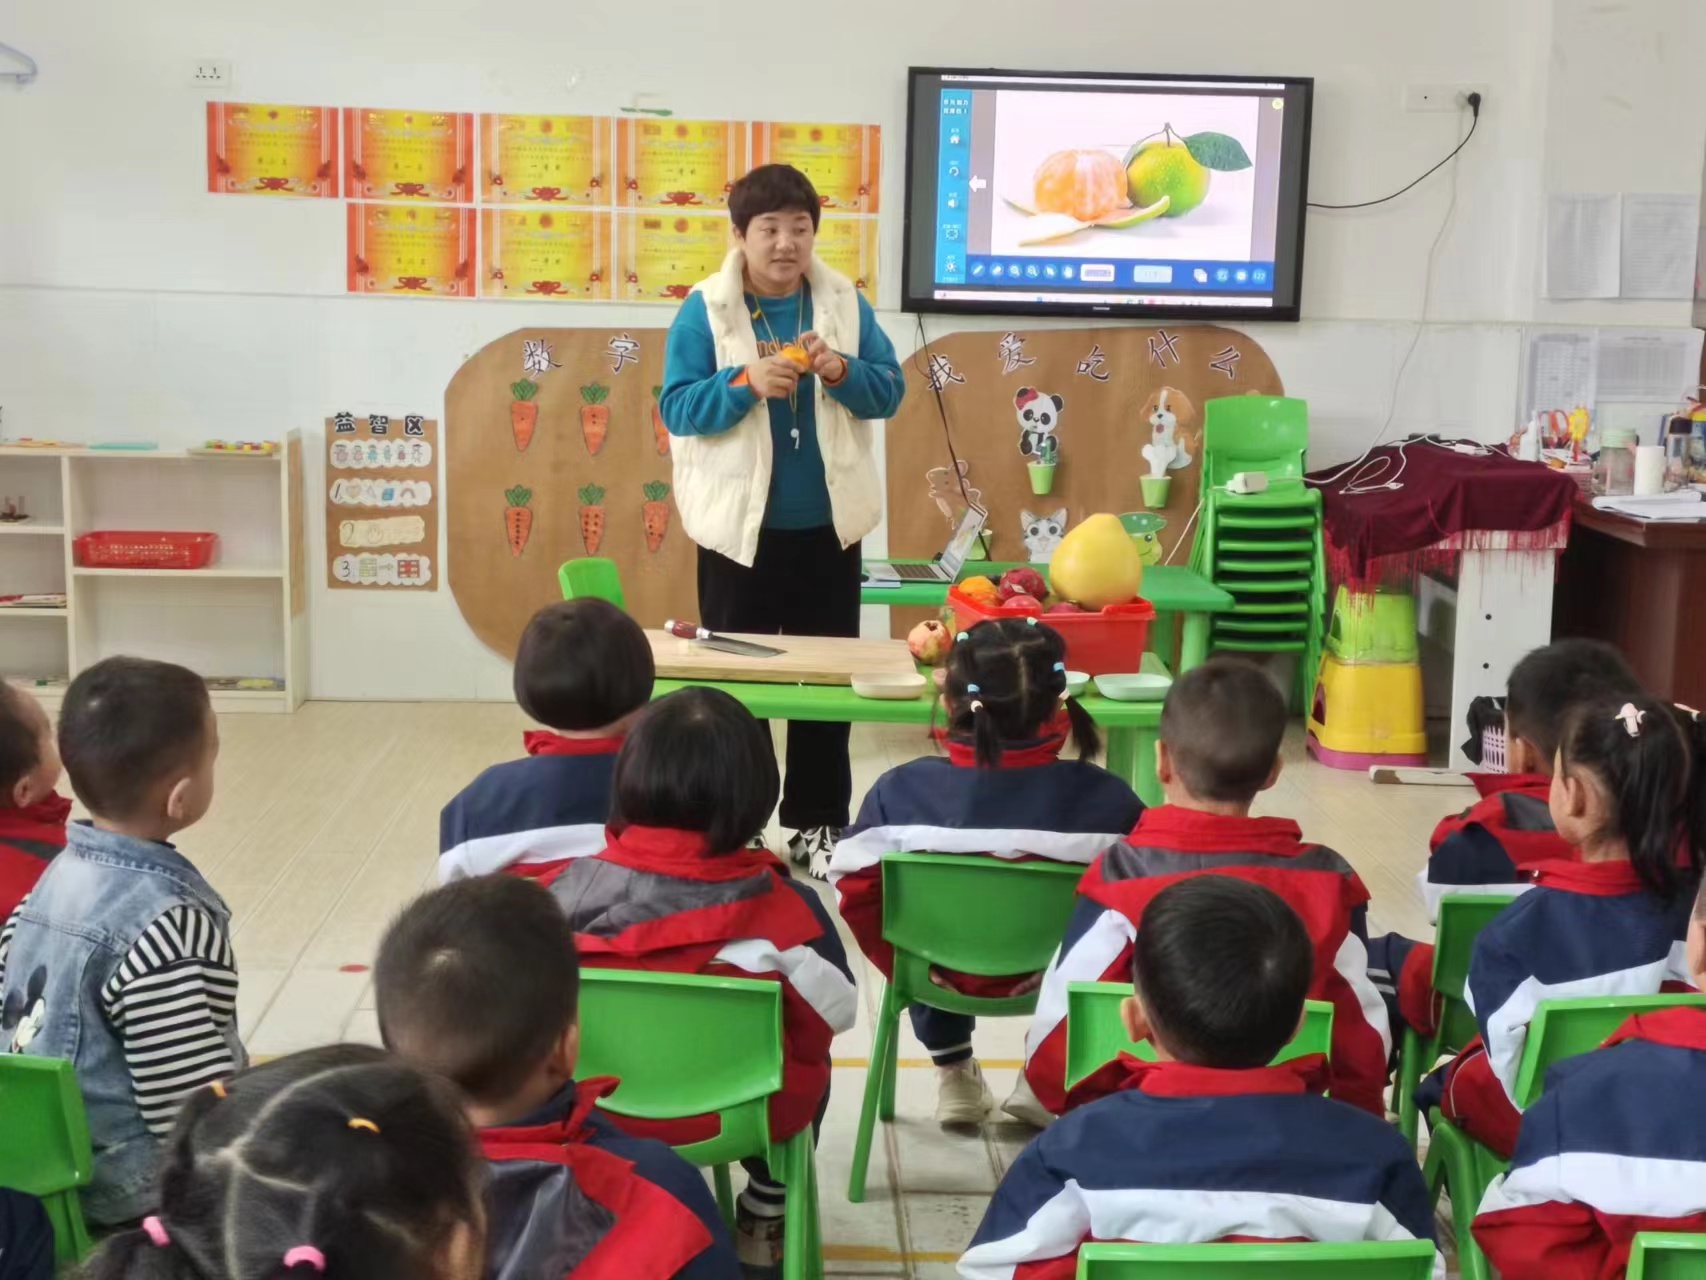 汉阴县漩涡镇中心幼儿园小班组园本课程